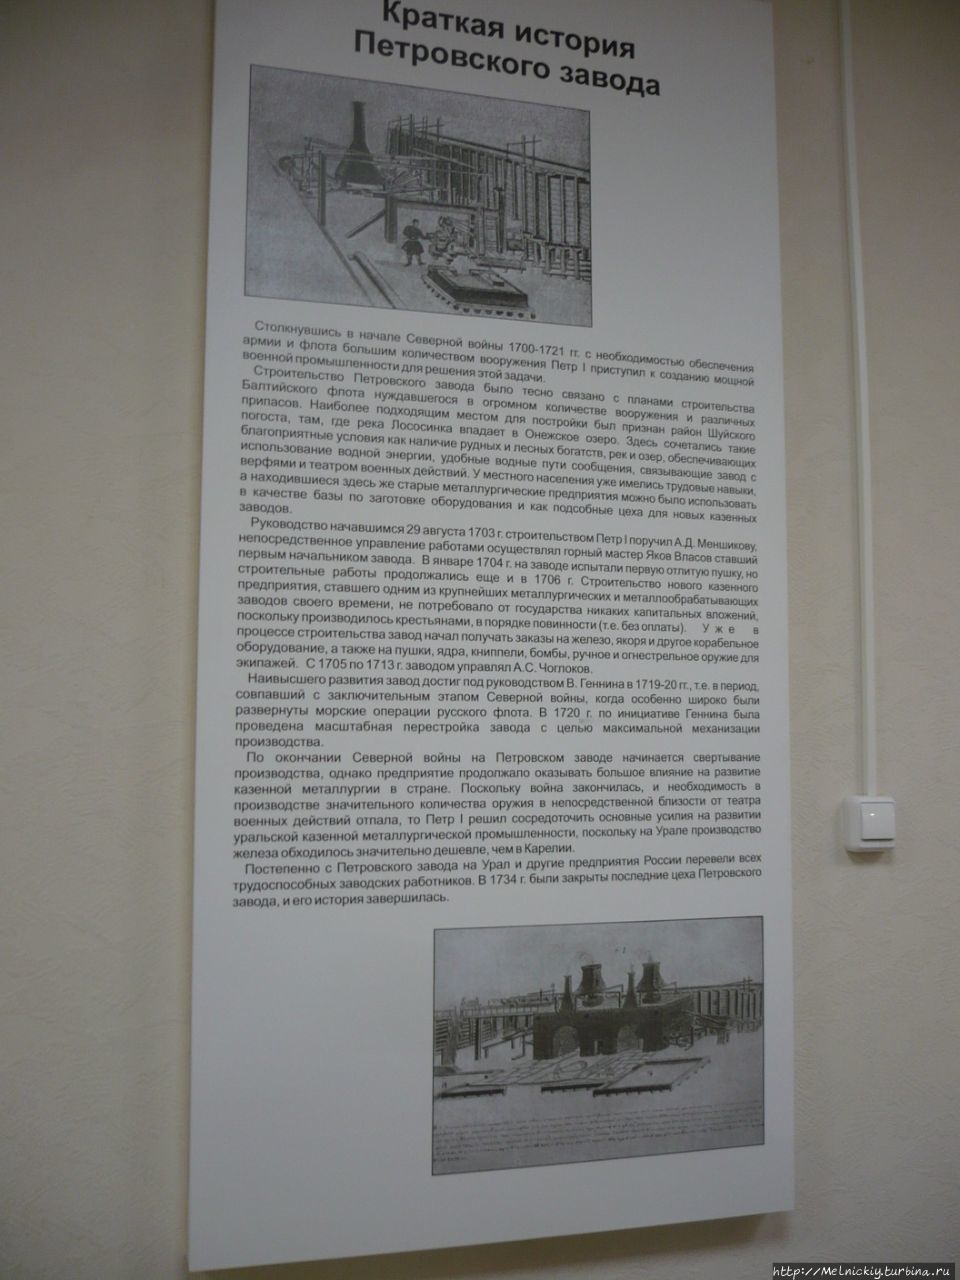 Галерея промышленной истории Петрозаводск, Россия